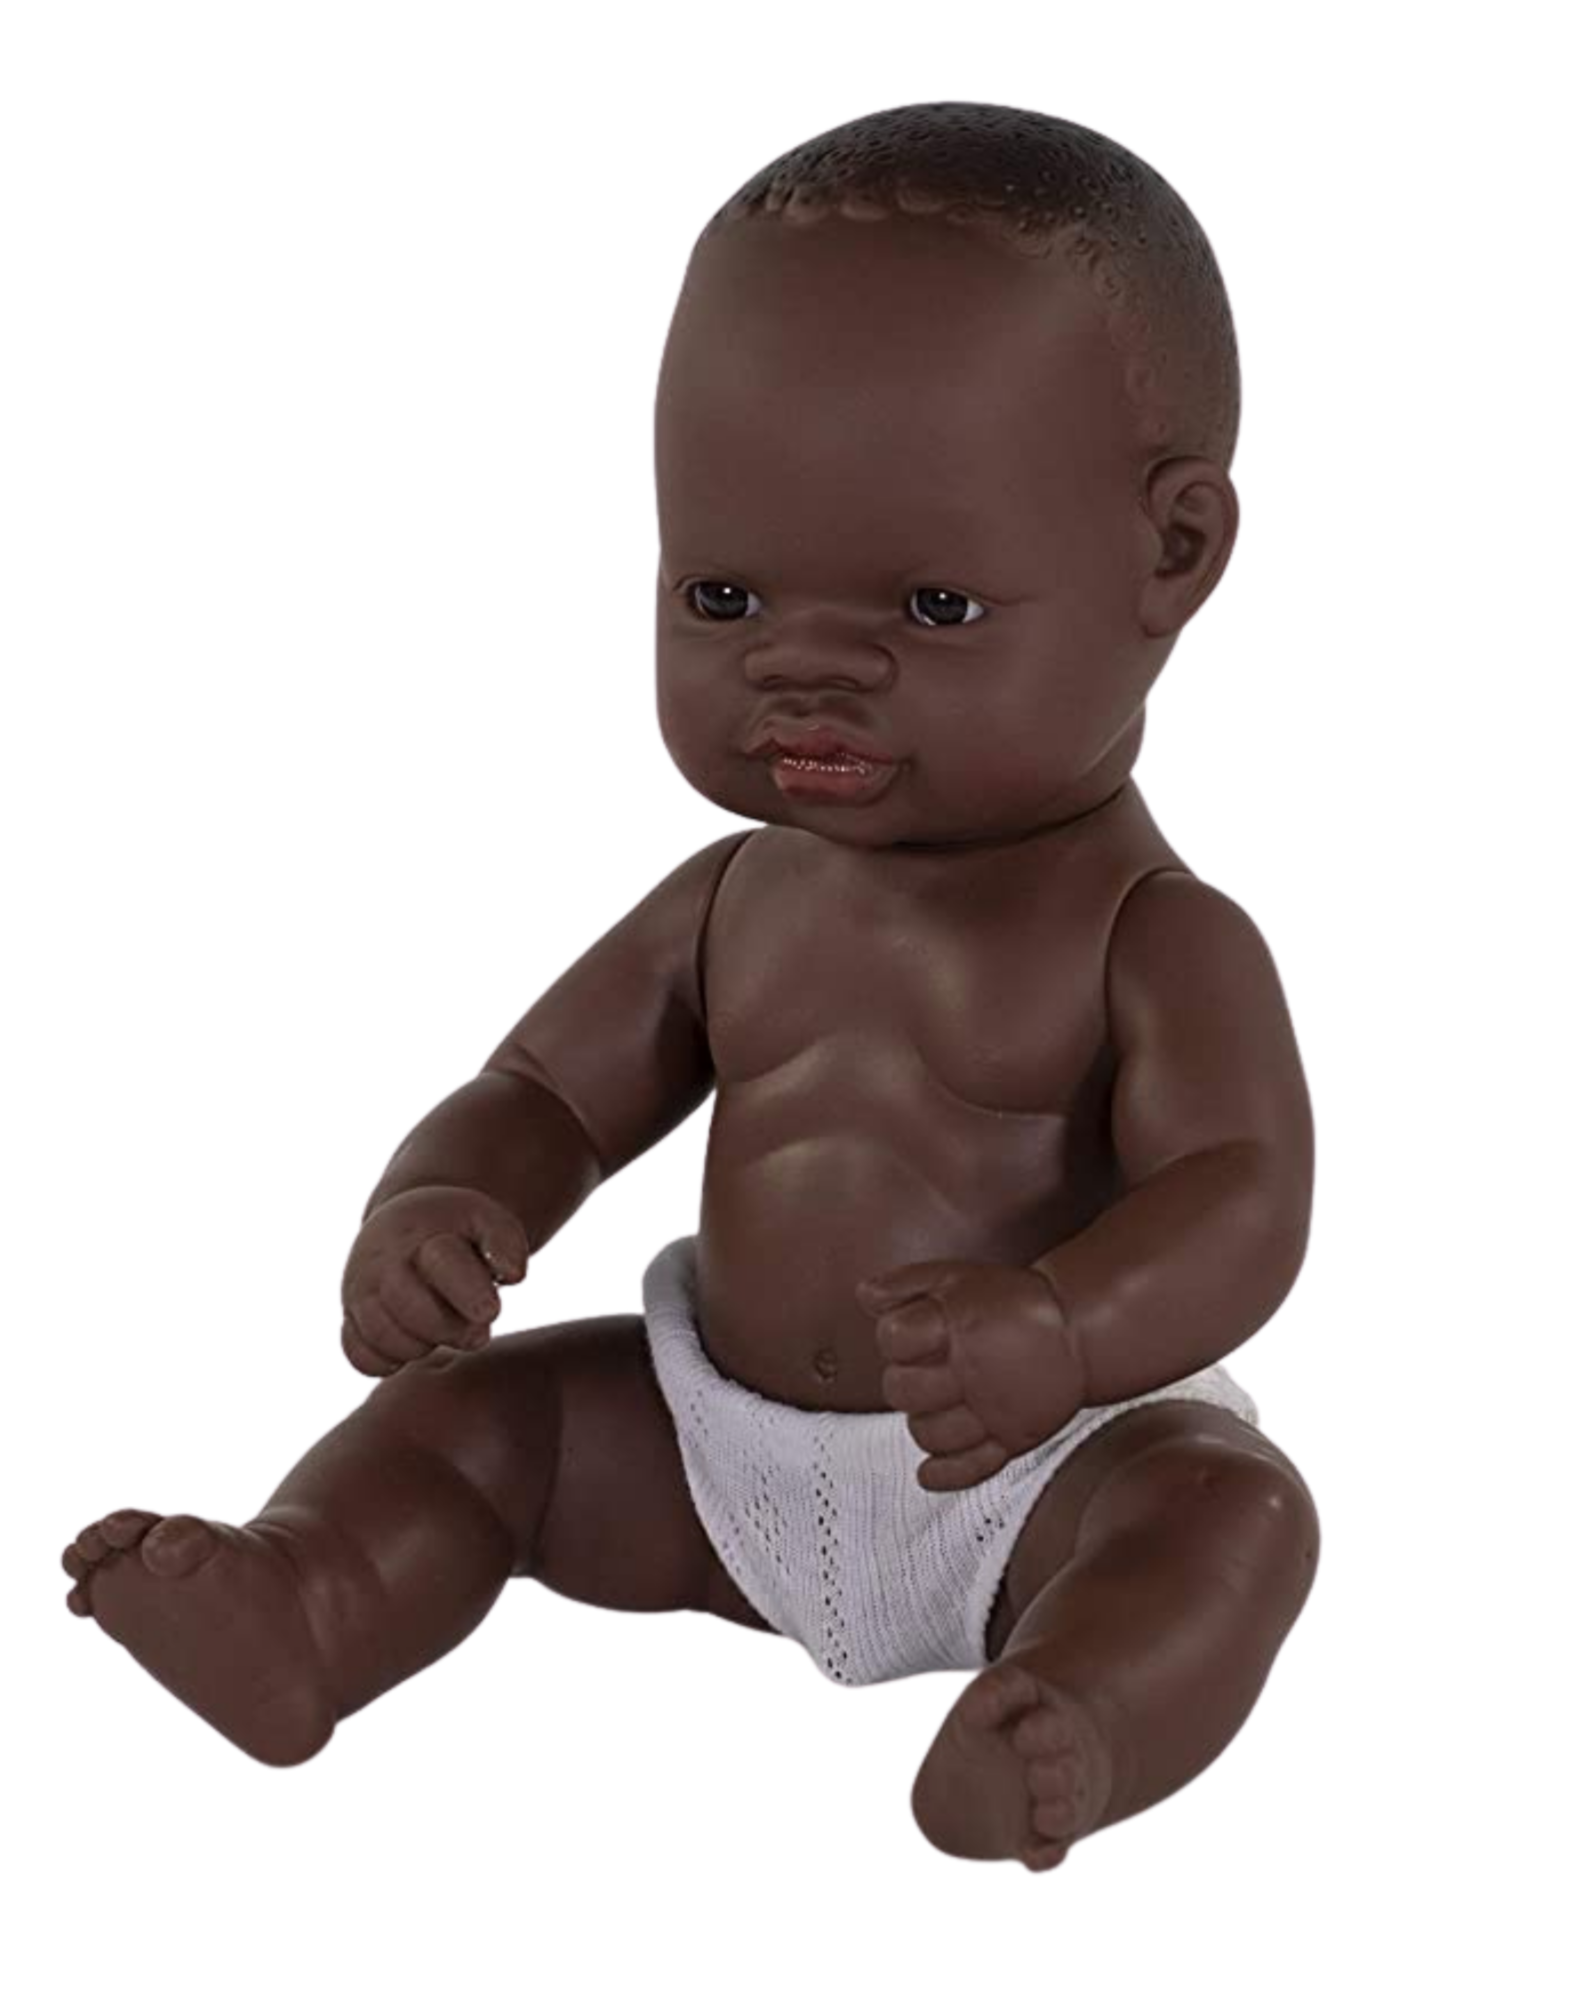 Miniland Newborn Boy Doll African Boy 12 5/8 inch - Ellie & Becks Co.